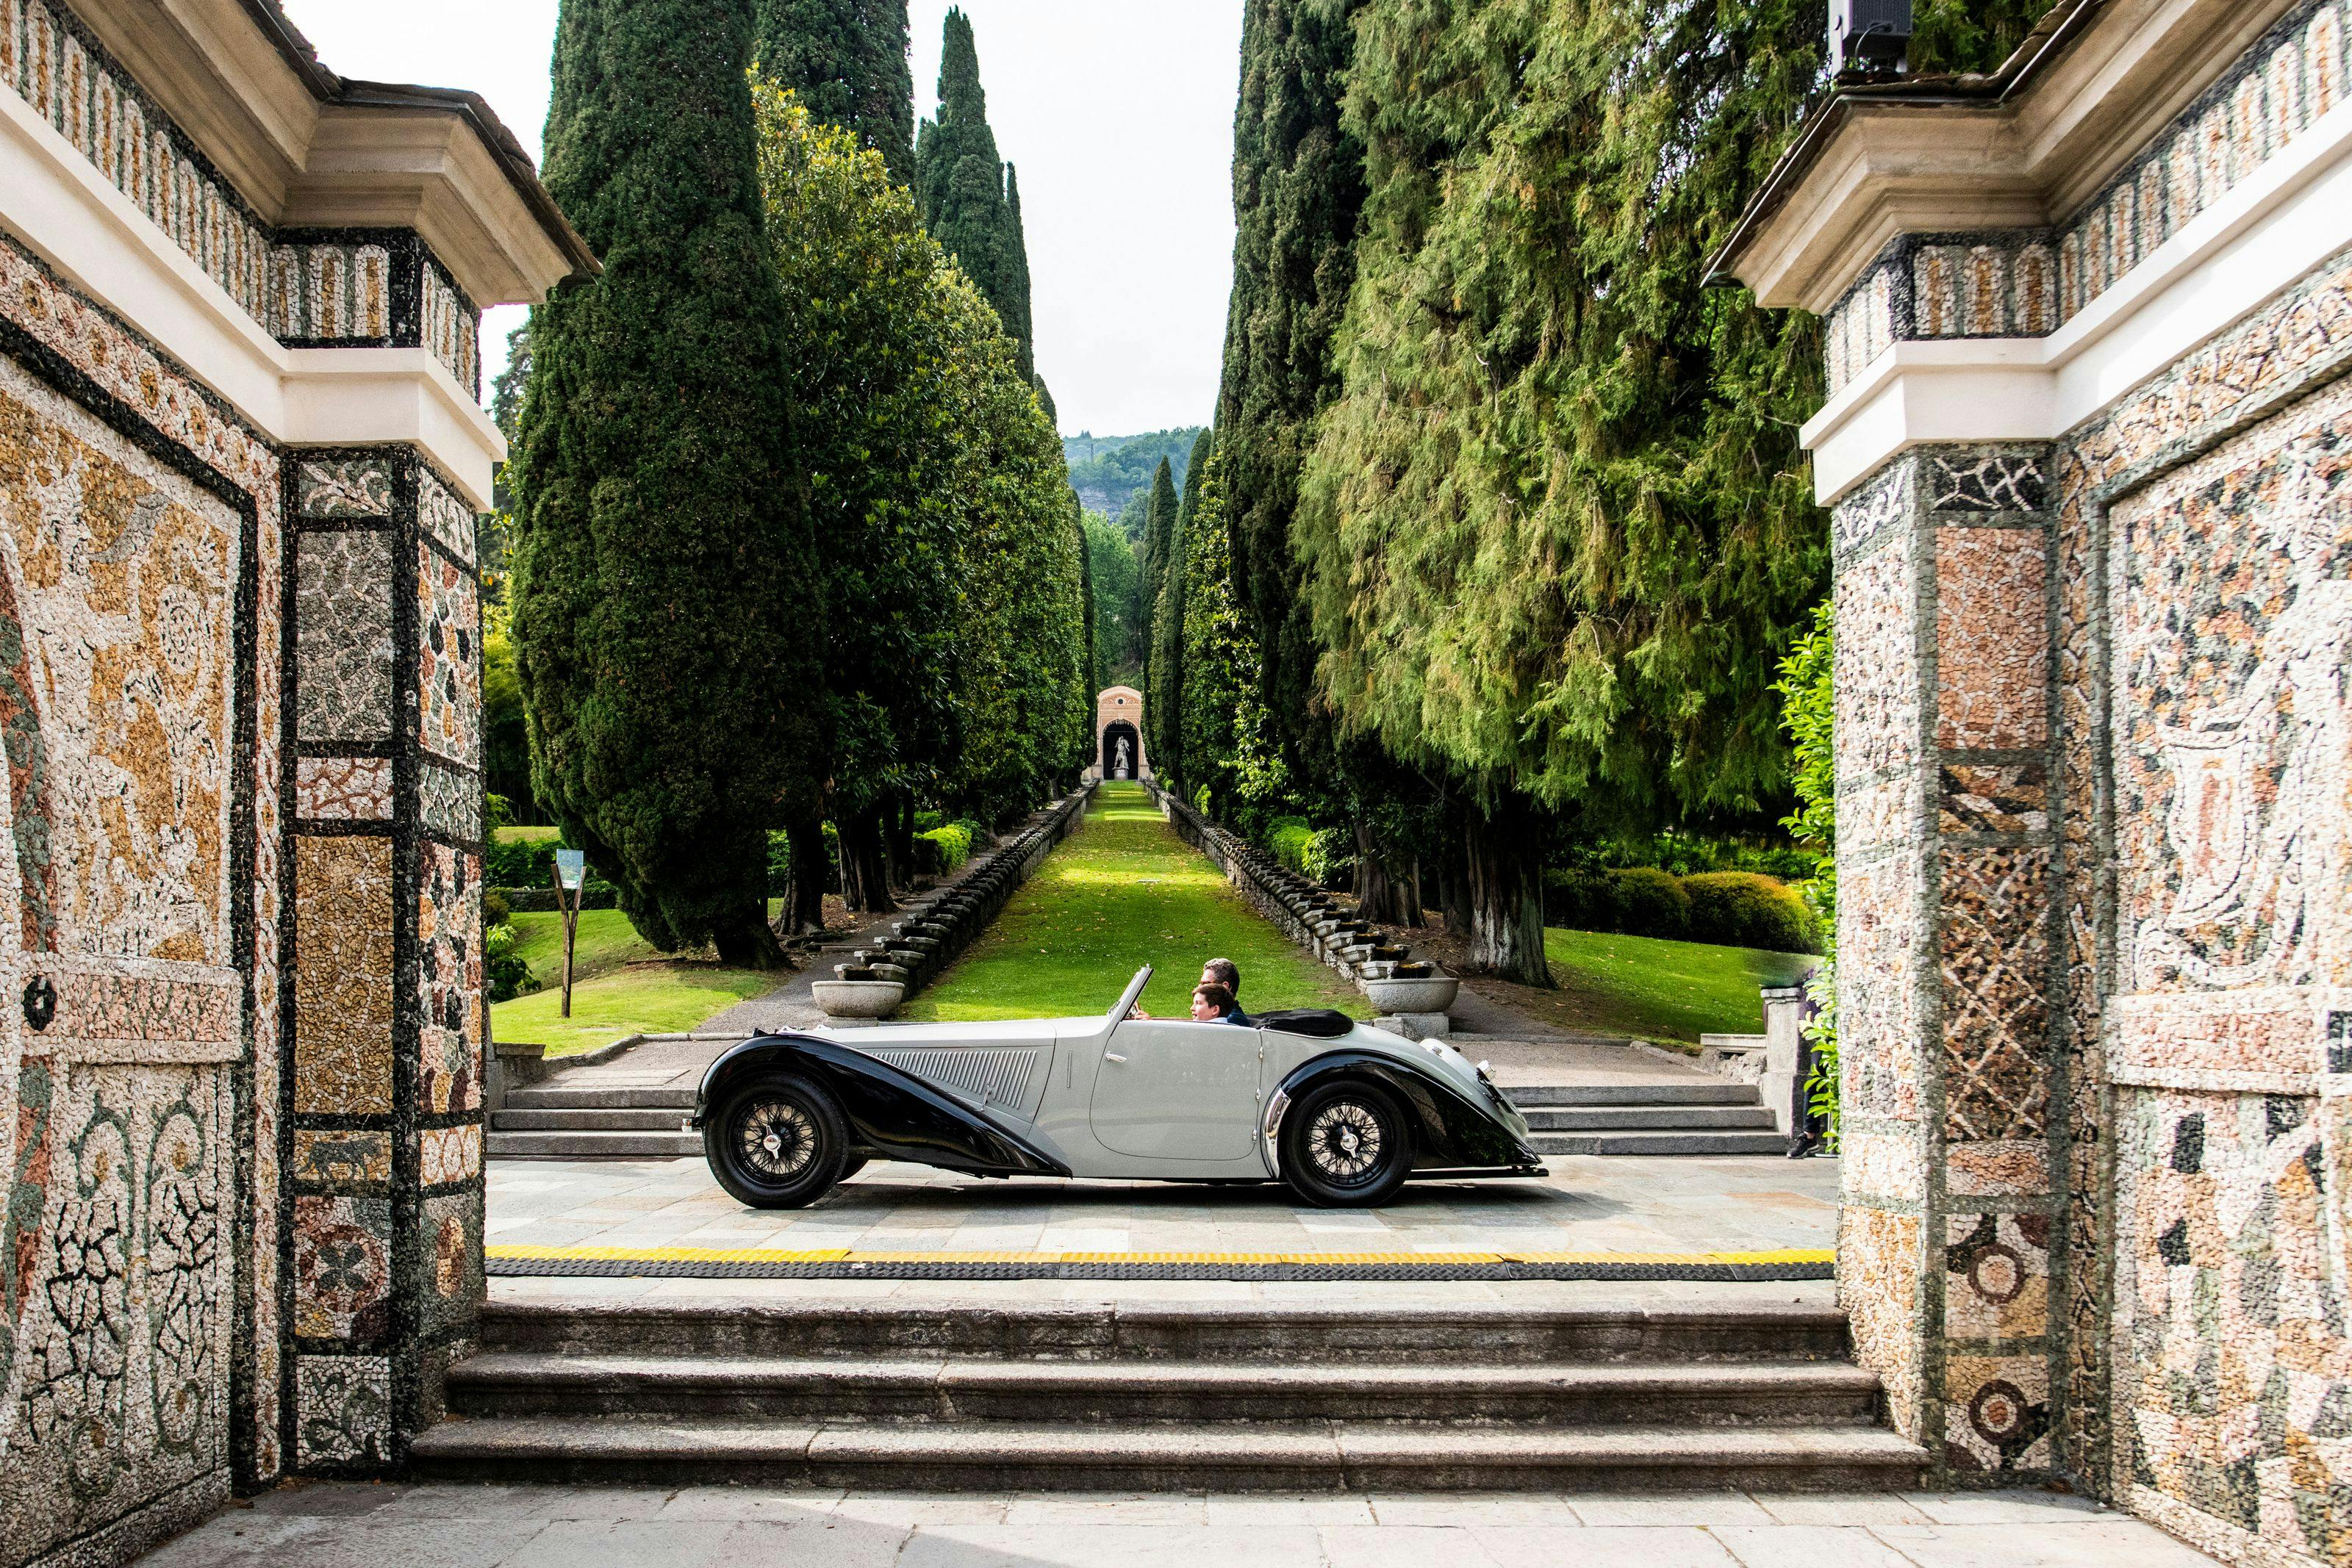 Bugatti sort plusieurs fois vainqueur du Concorso d’Eleganza en remportant le prix « Best of Show », le « FIVA Trophy » et le « Design Award for Concept Cars and Prototypes »